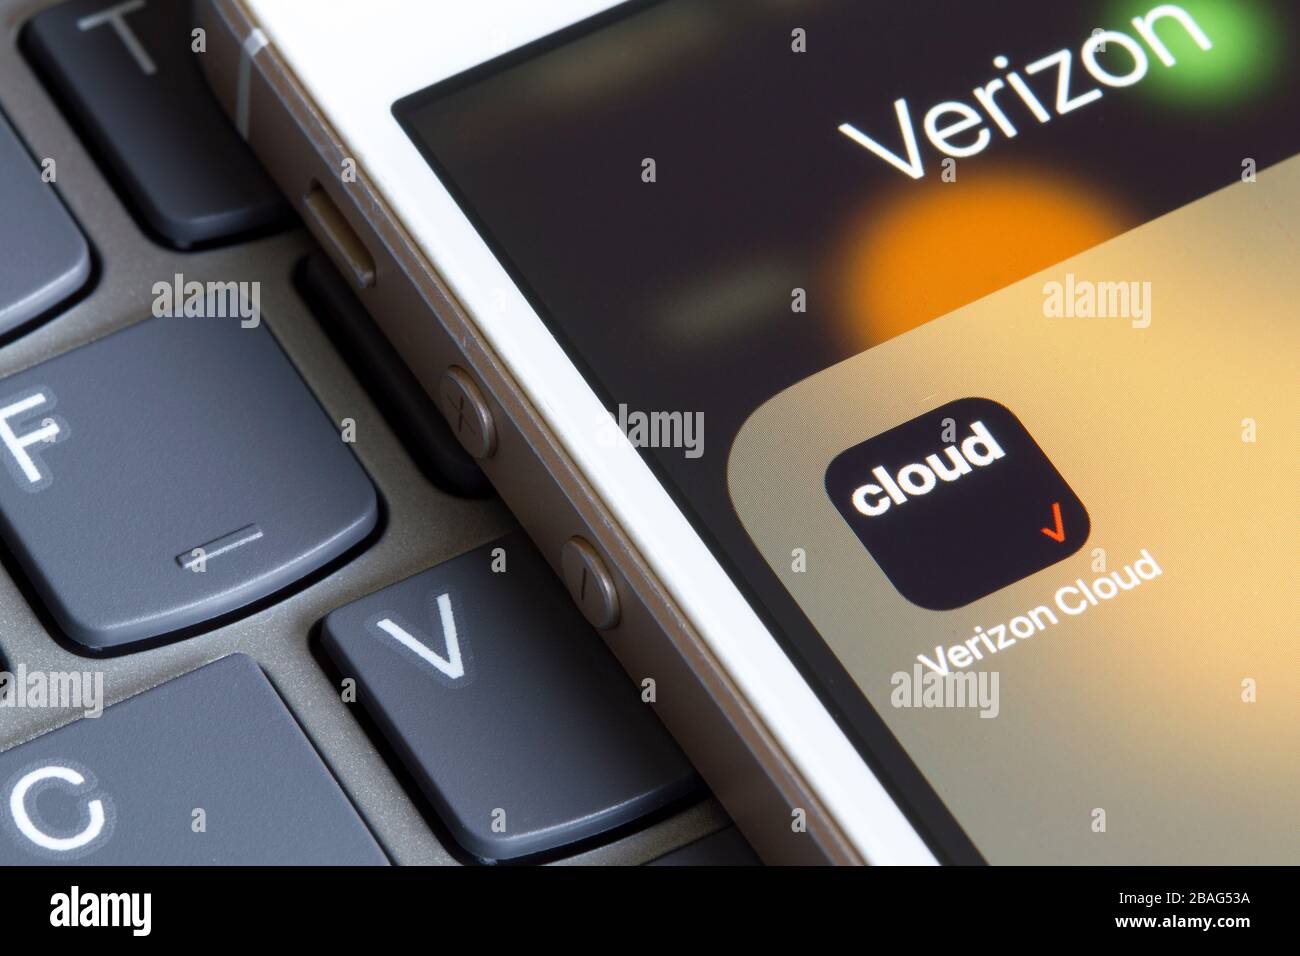 Icona app mobile Verizon Cloud in primo piano. L'applicazione basata su cloud consente agli utenti di eseguire il backup, la sincronizzazione, l'accesso, la modifica e la condivisione dei contenuti dai dispositivi mobili. Foto Stock